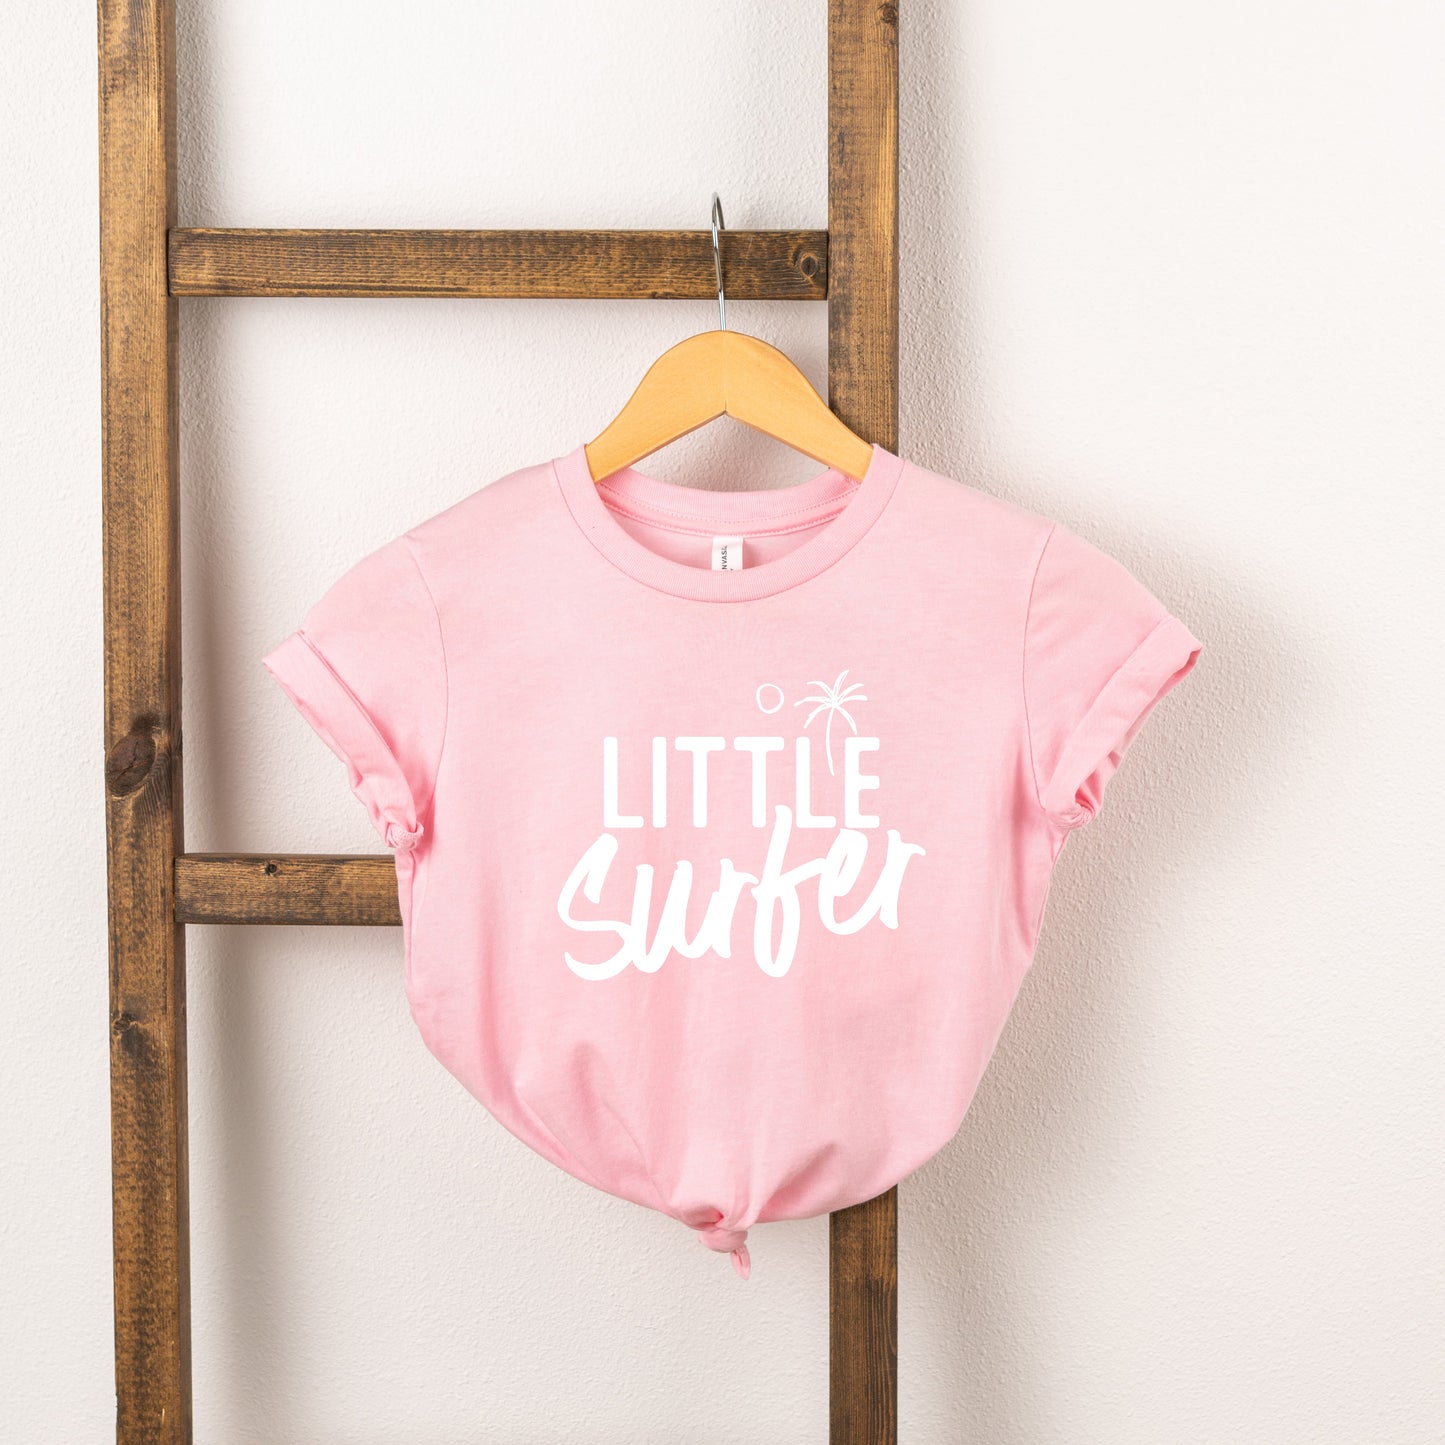 Little Surfer | Toddler Short Sleeve Crew Neck